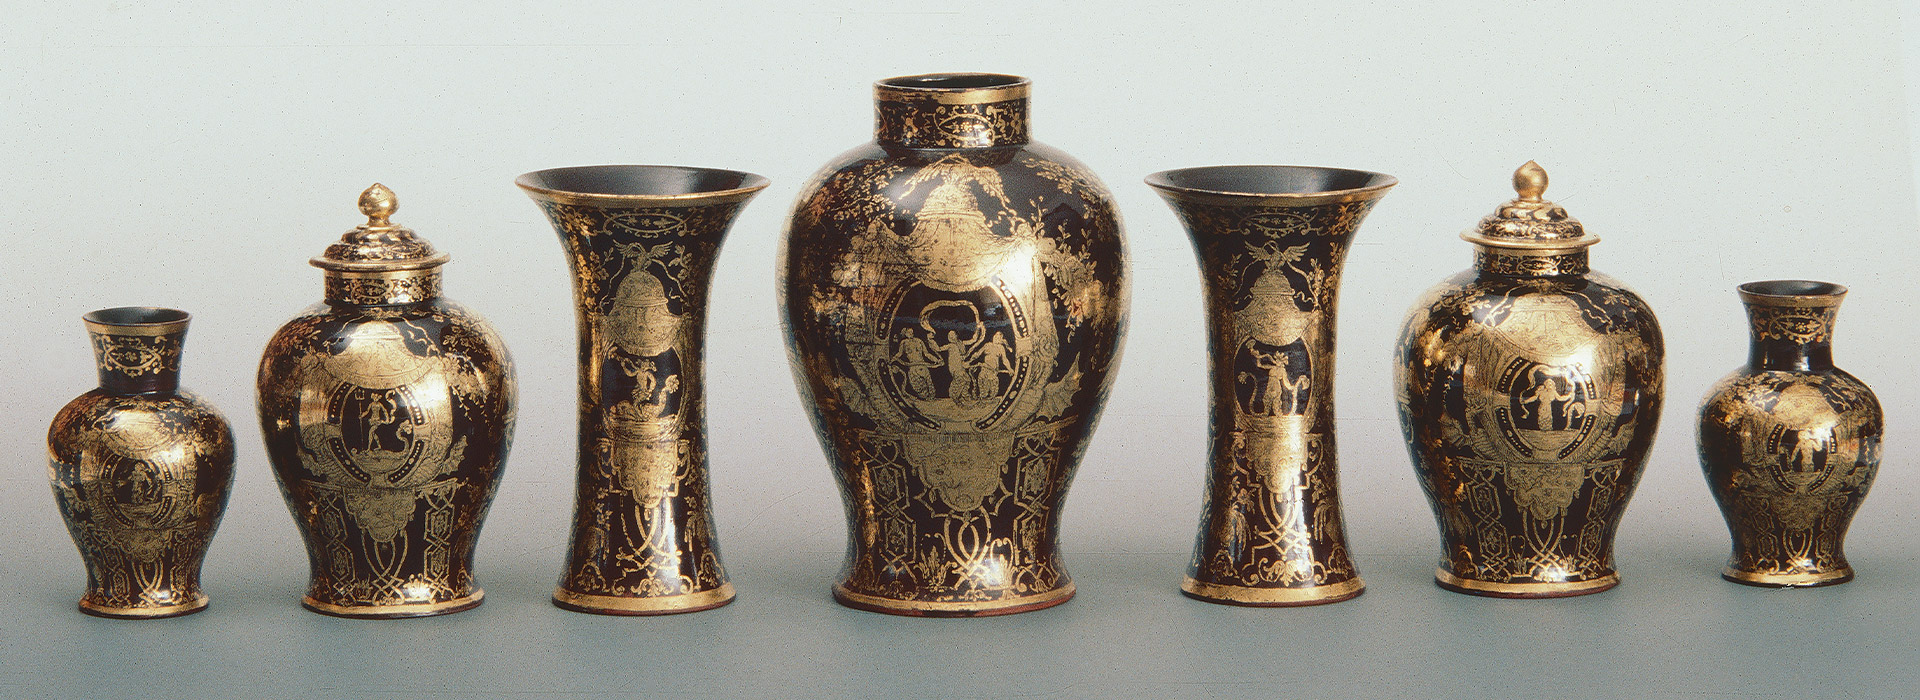 Vasen aus der Fayence-Sammlung von Dr. Otto Burkhardt